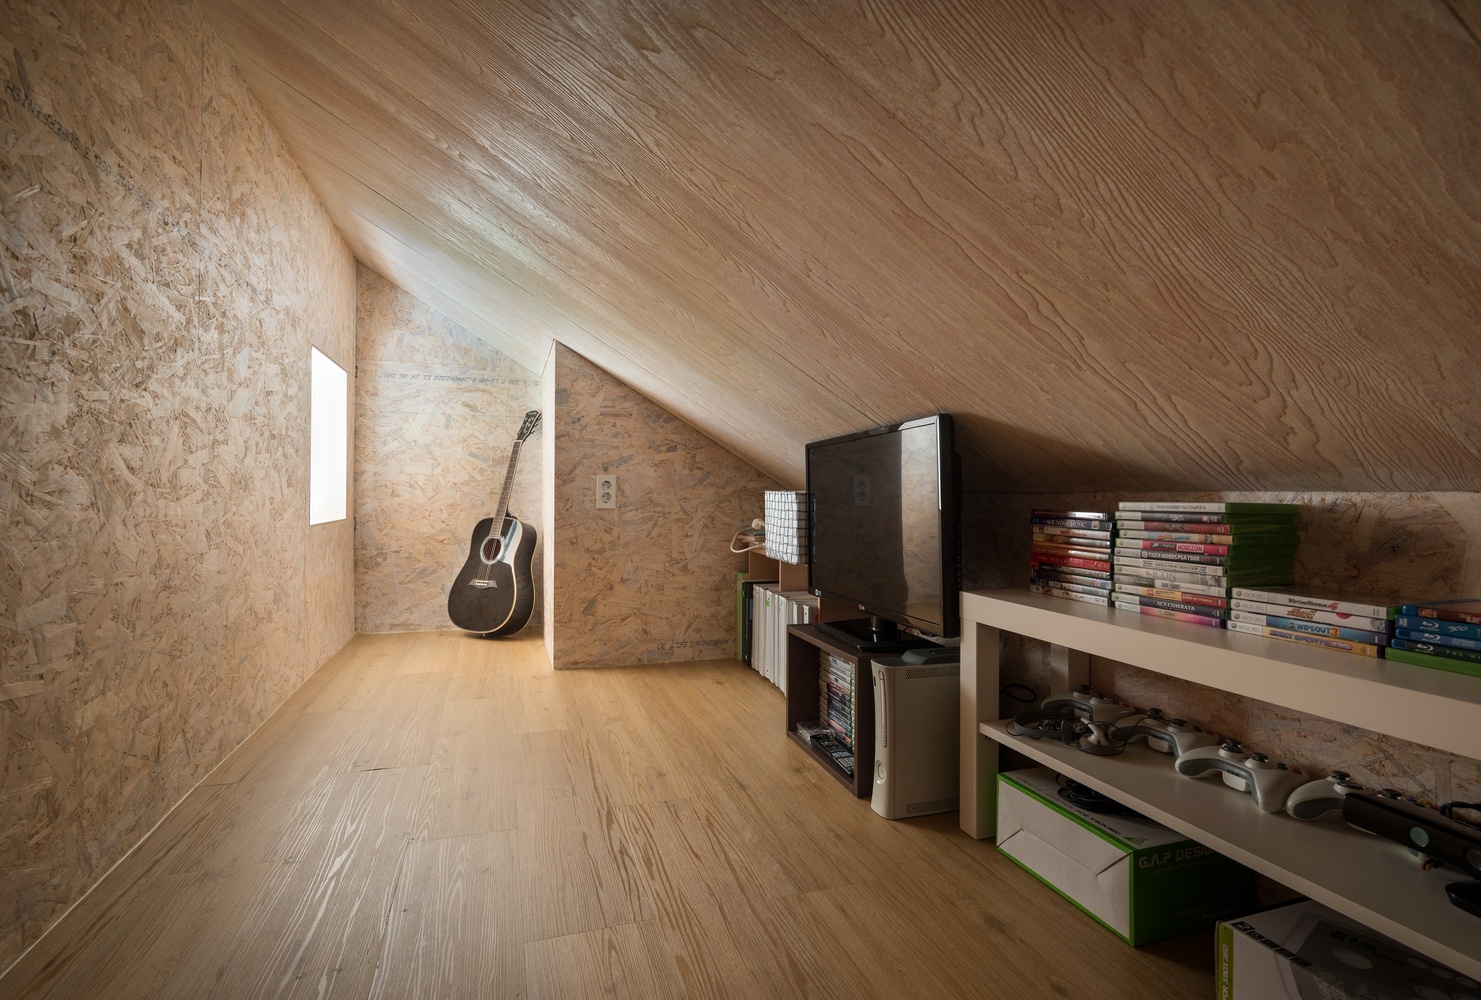 Hình ảnh phòng làm việc trên tầng áp mái với trần và tường ốp gỗ, kệ sách mở, tivi, đàn ghita ở góc